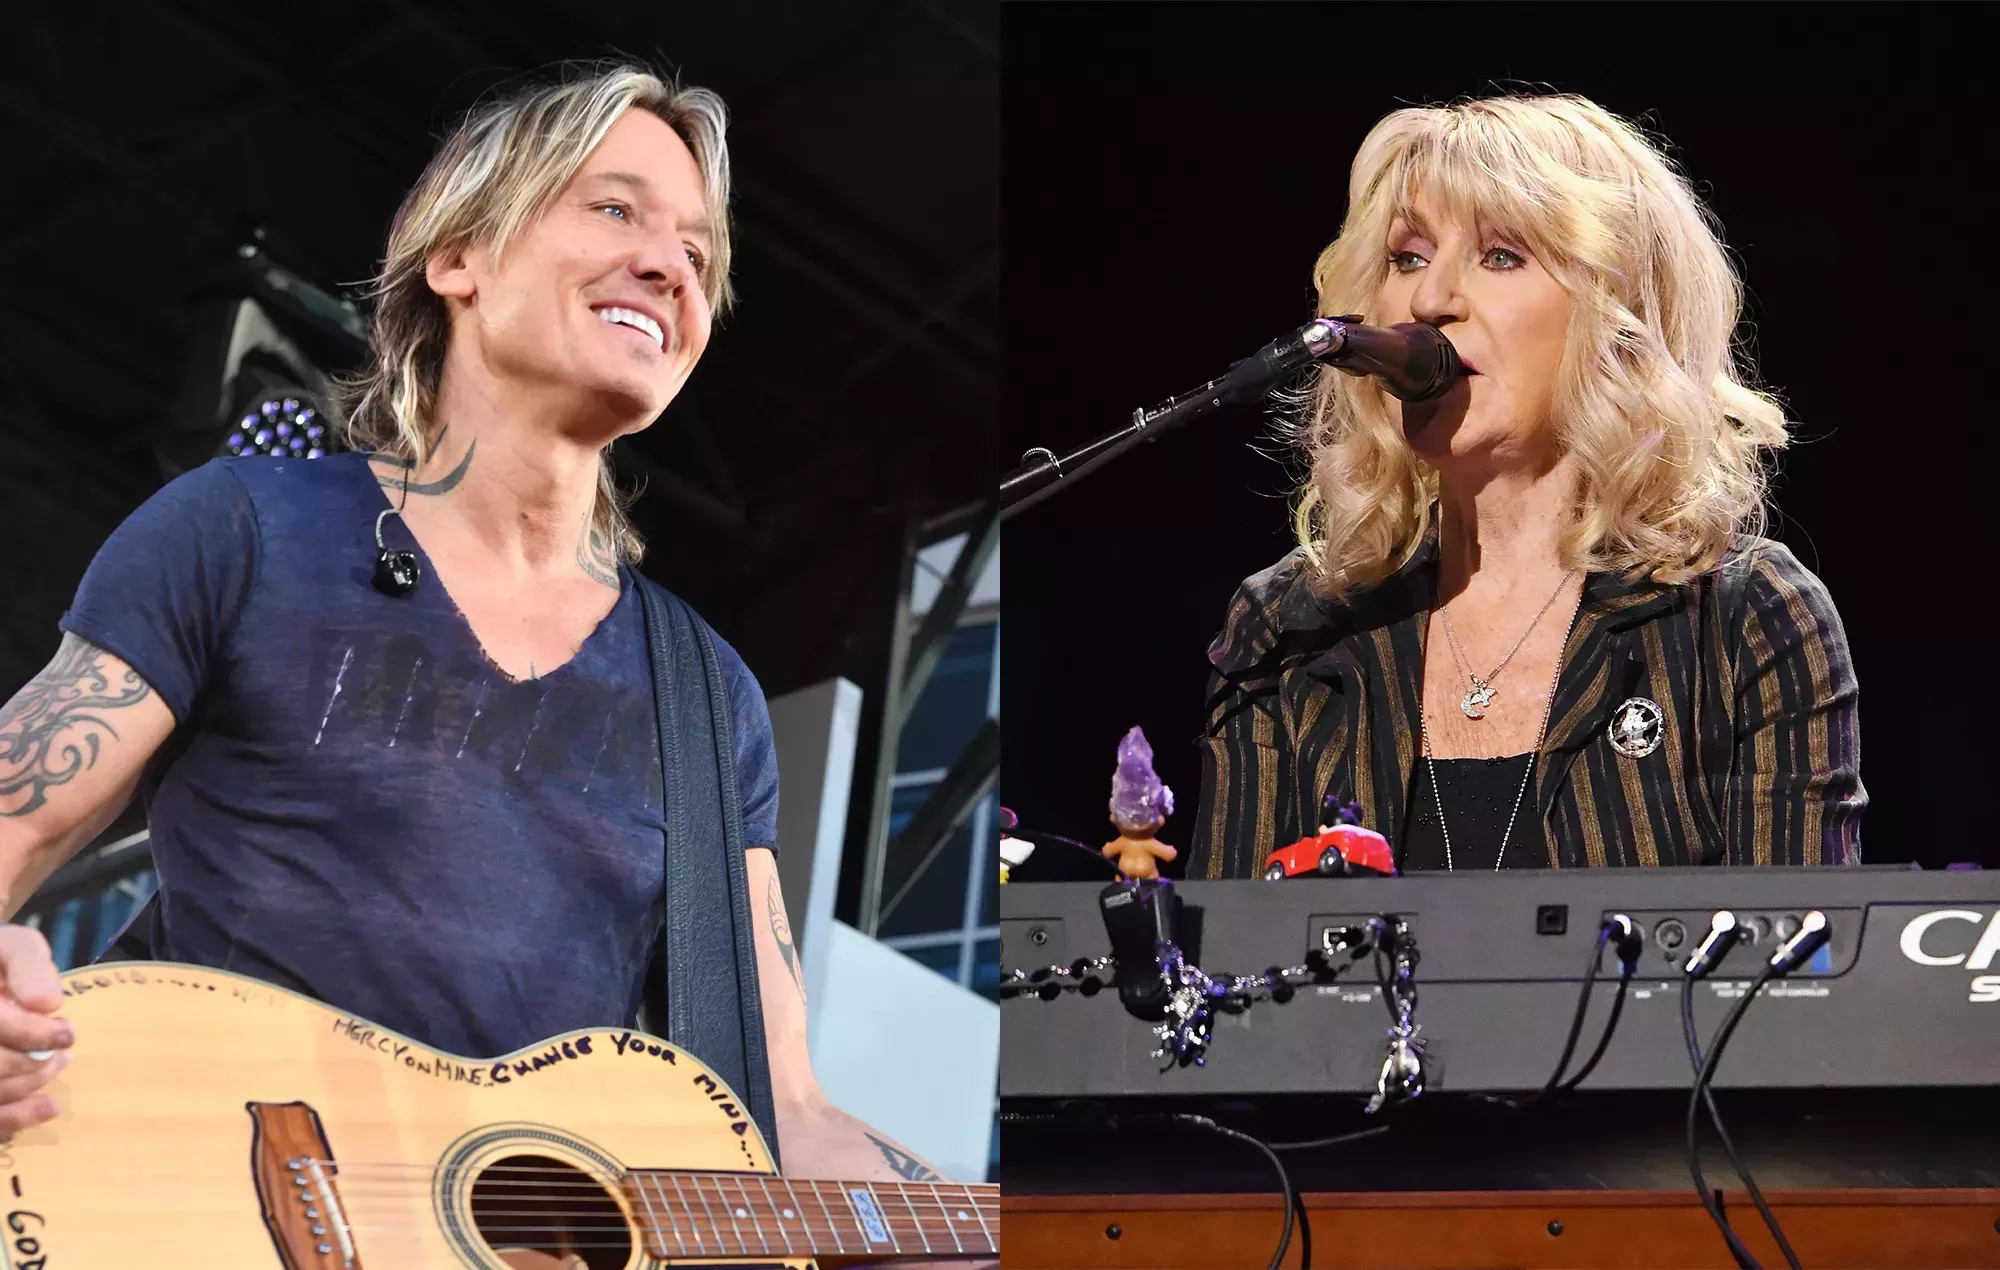 Mira cómo Keith Urban rinde homenaje a Christine McVie con un medley en directo de Fleetwood Mac